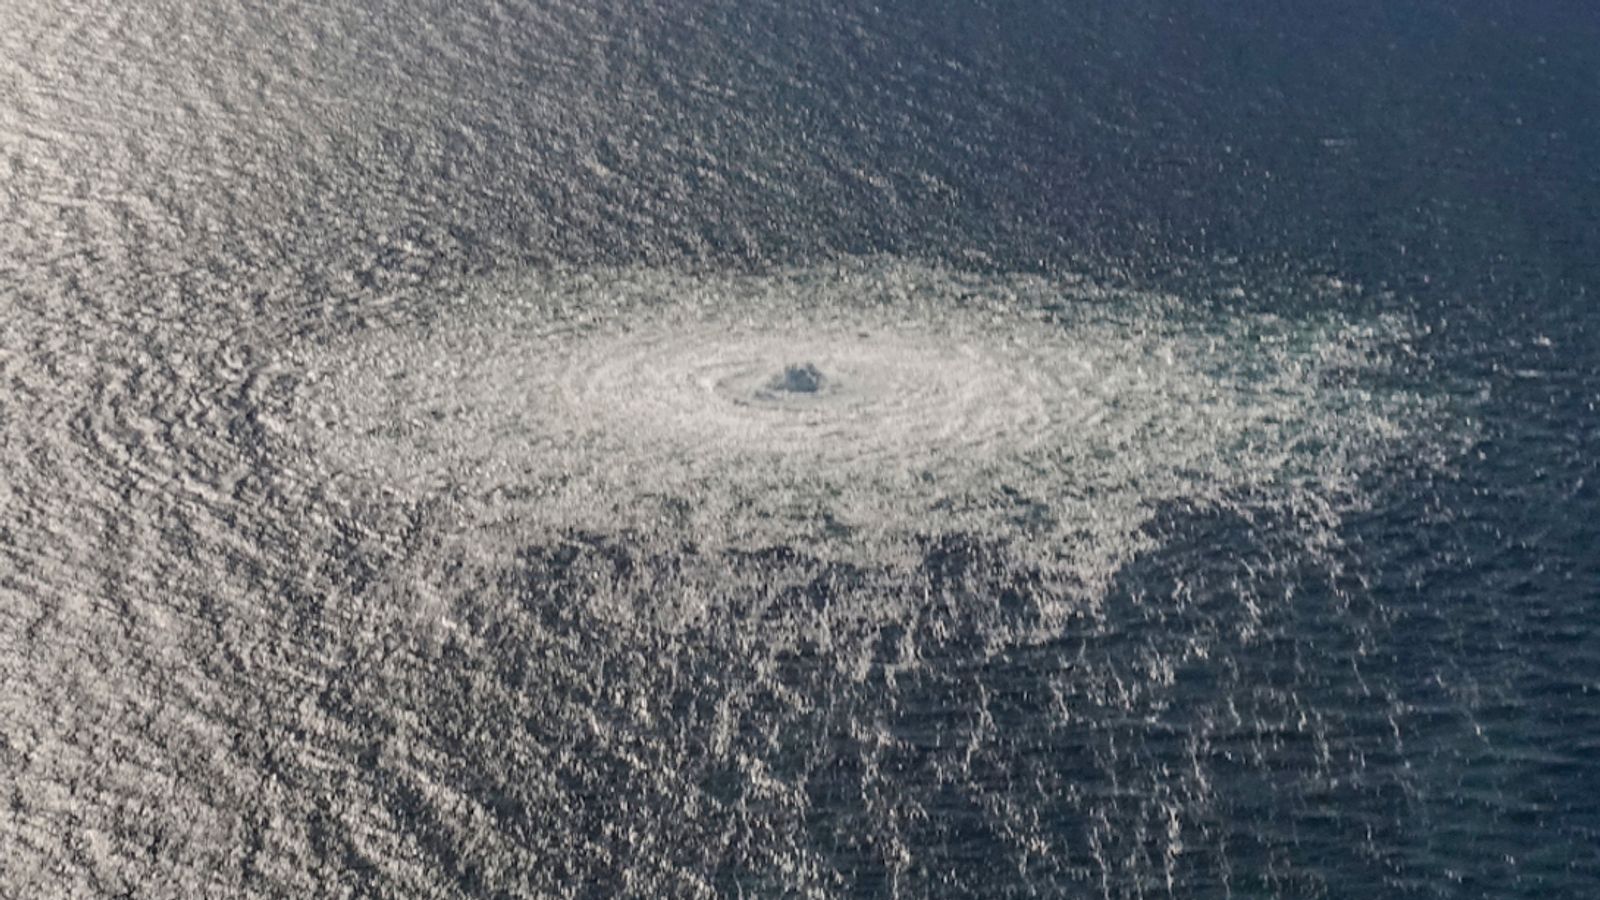 Fregatte der Royal Navy nach Angriffen auf Nord Stream-Gaspipelines in die Nordsee geschickt |  Weltnachrichten